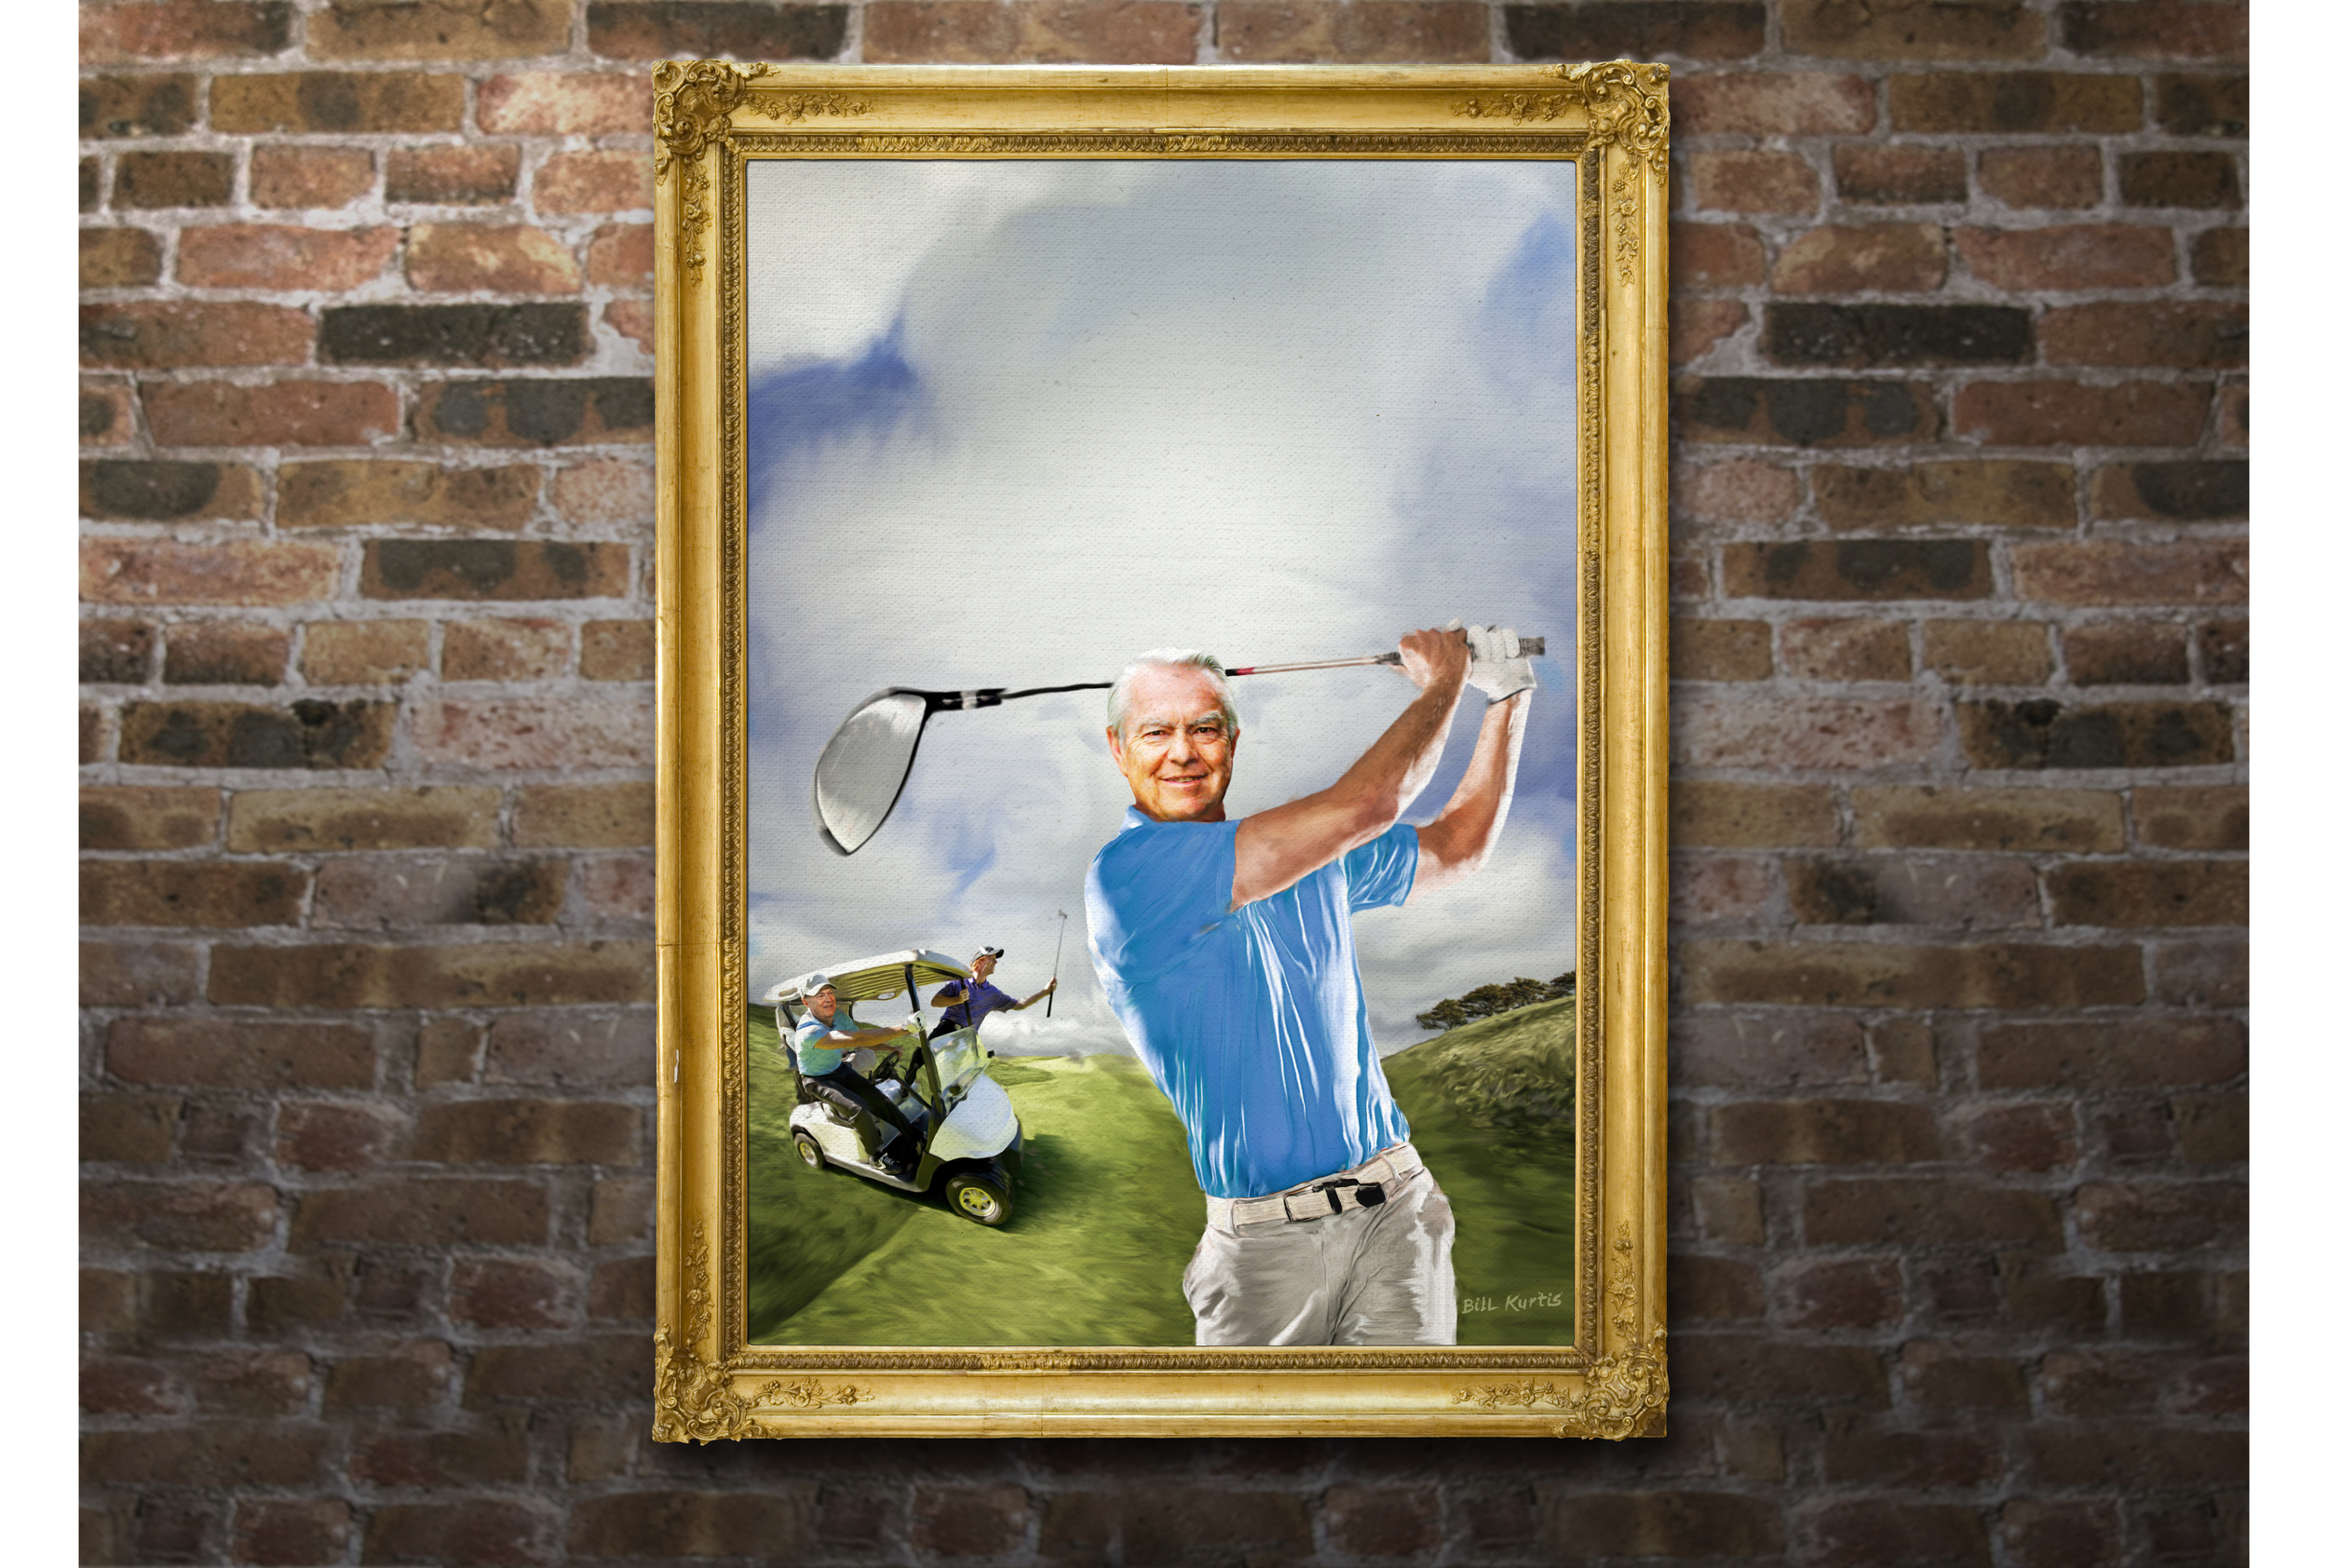 Bill_in_frames_wall_wide2_golf.jpg